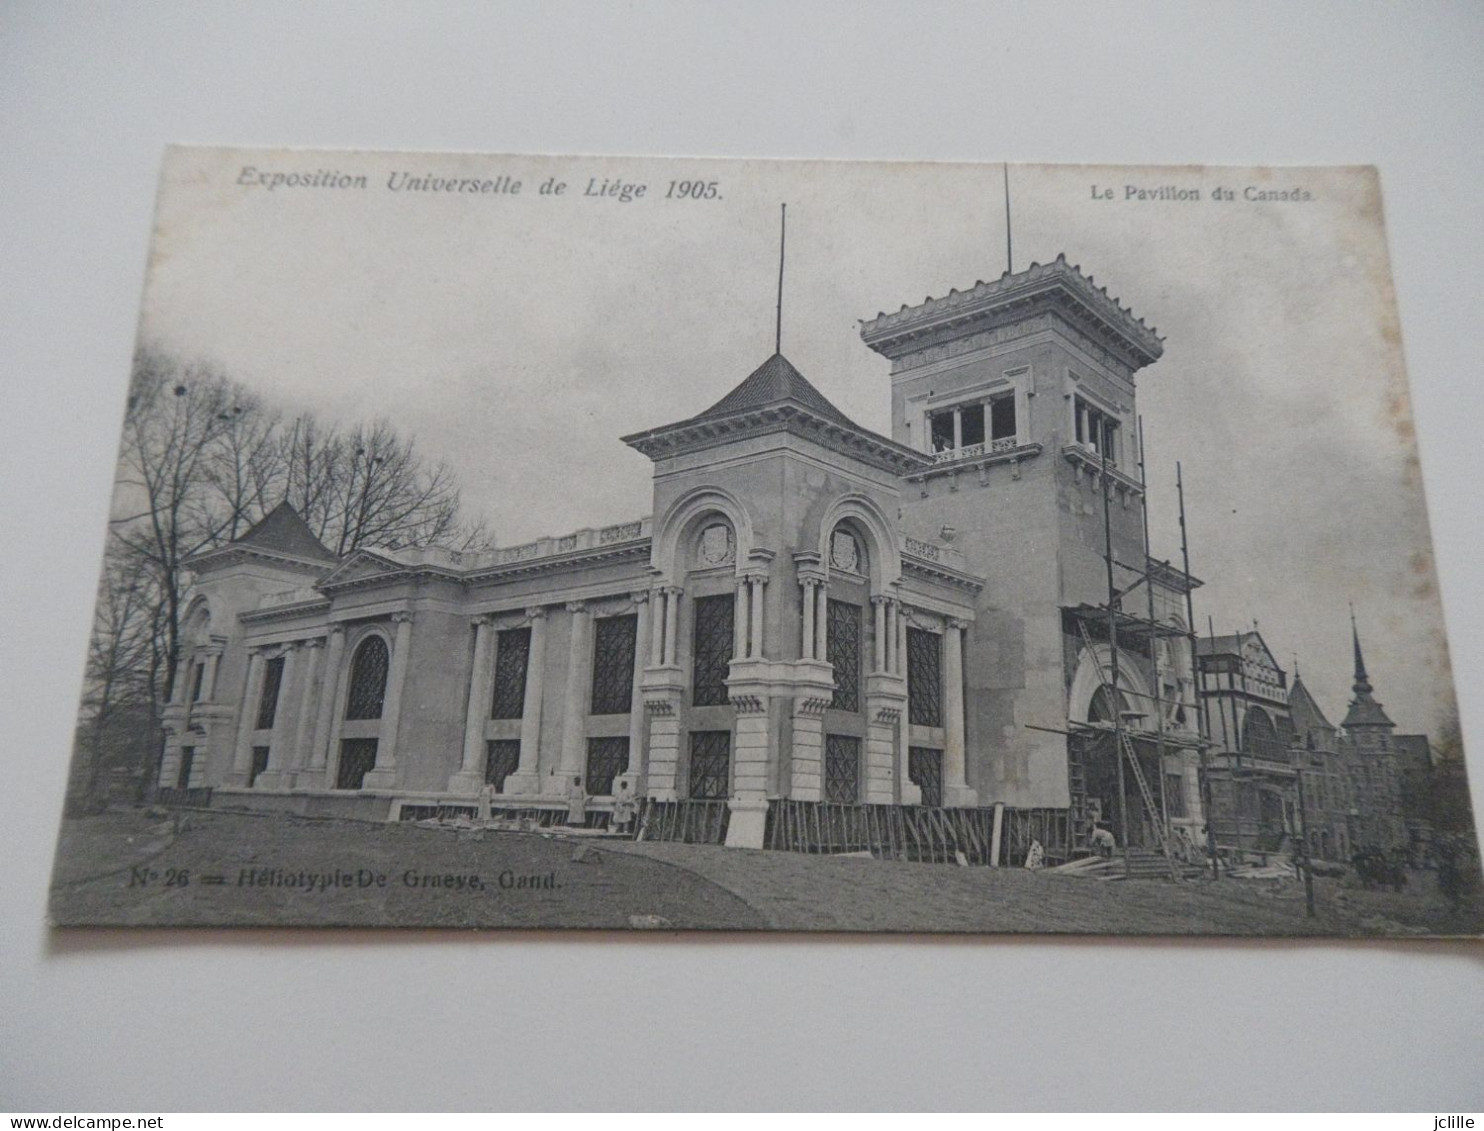 Lot de 18 cp cpa cpm  - LIEGE - EXPOSITION UNIVERSELLE 1905 - BELGIQUE